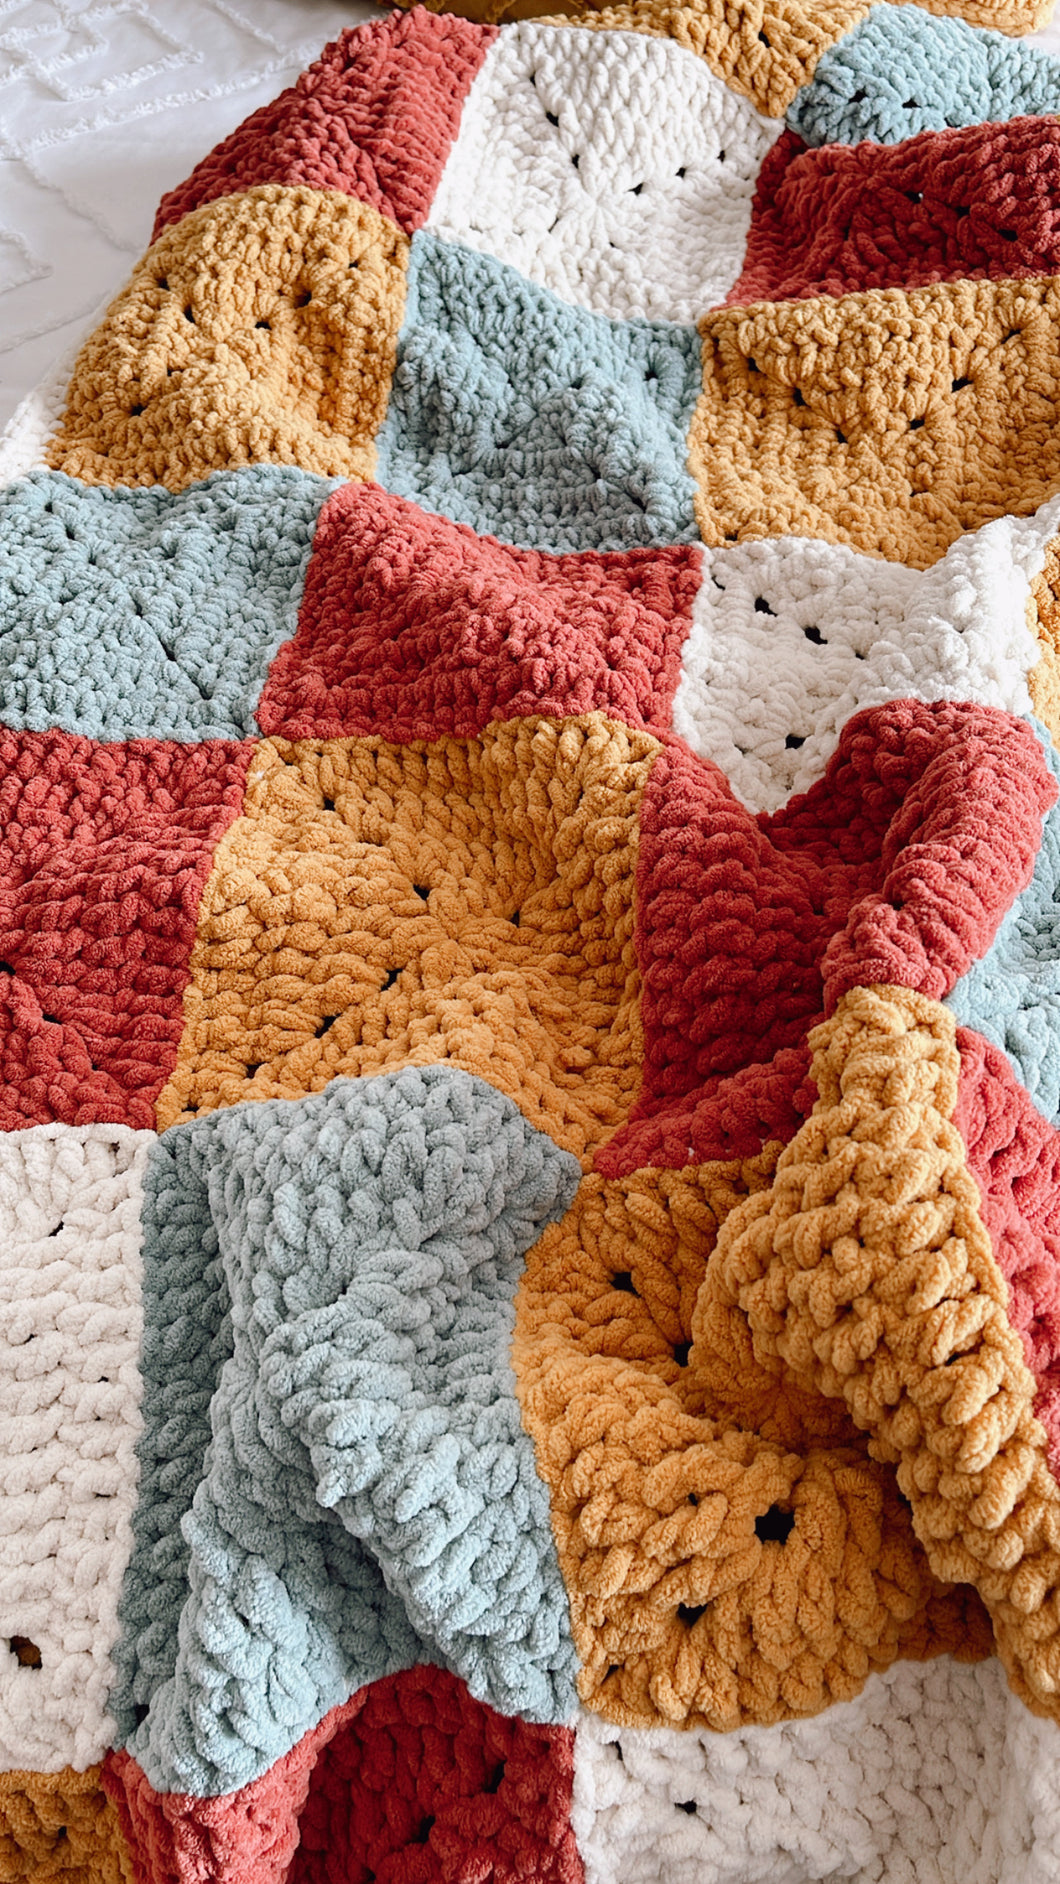 Not Your Abuelita's Blanket - Patrón Crochet